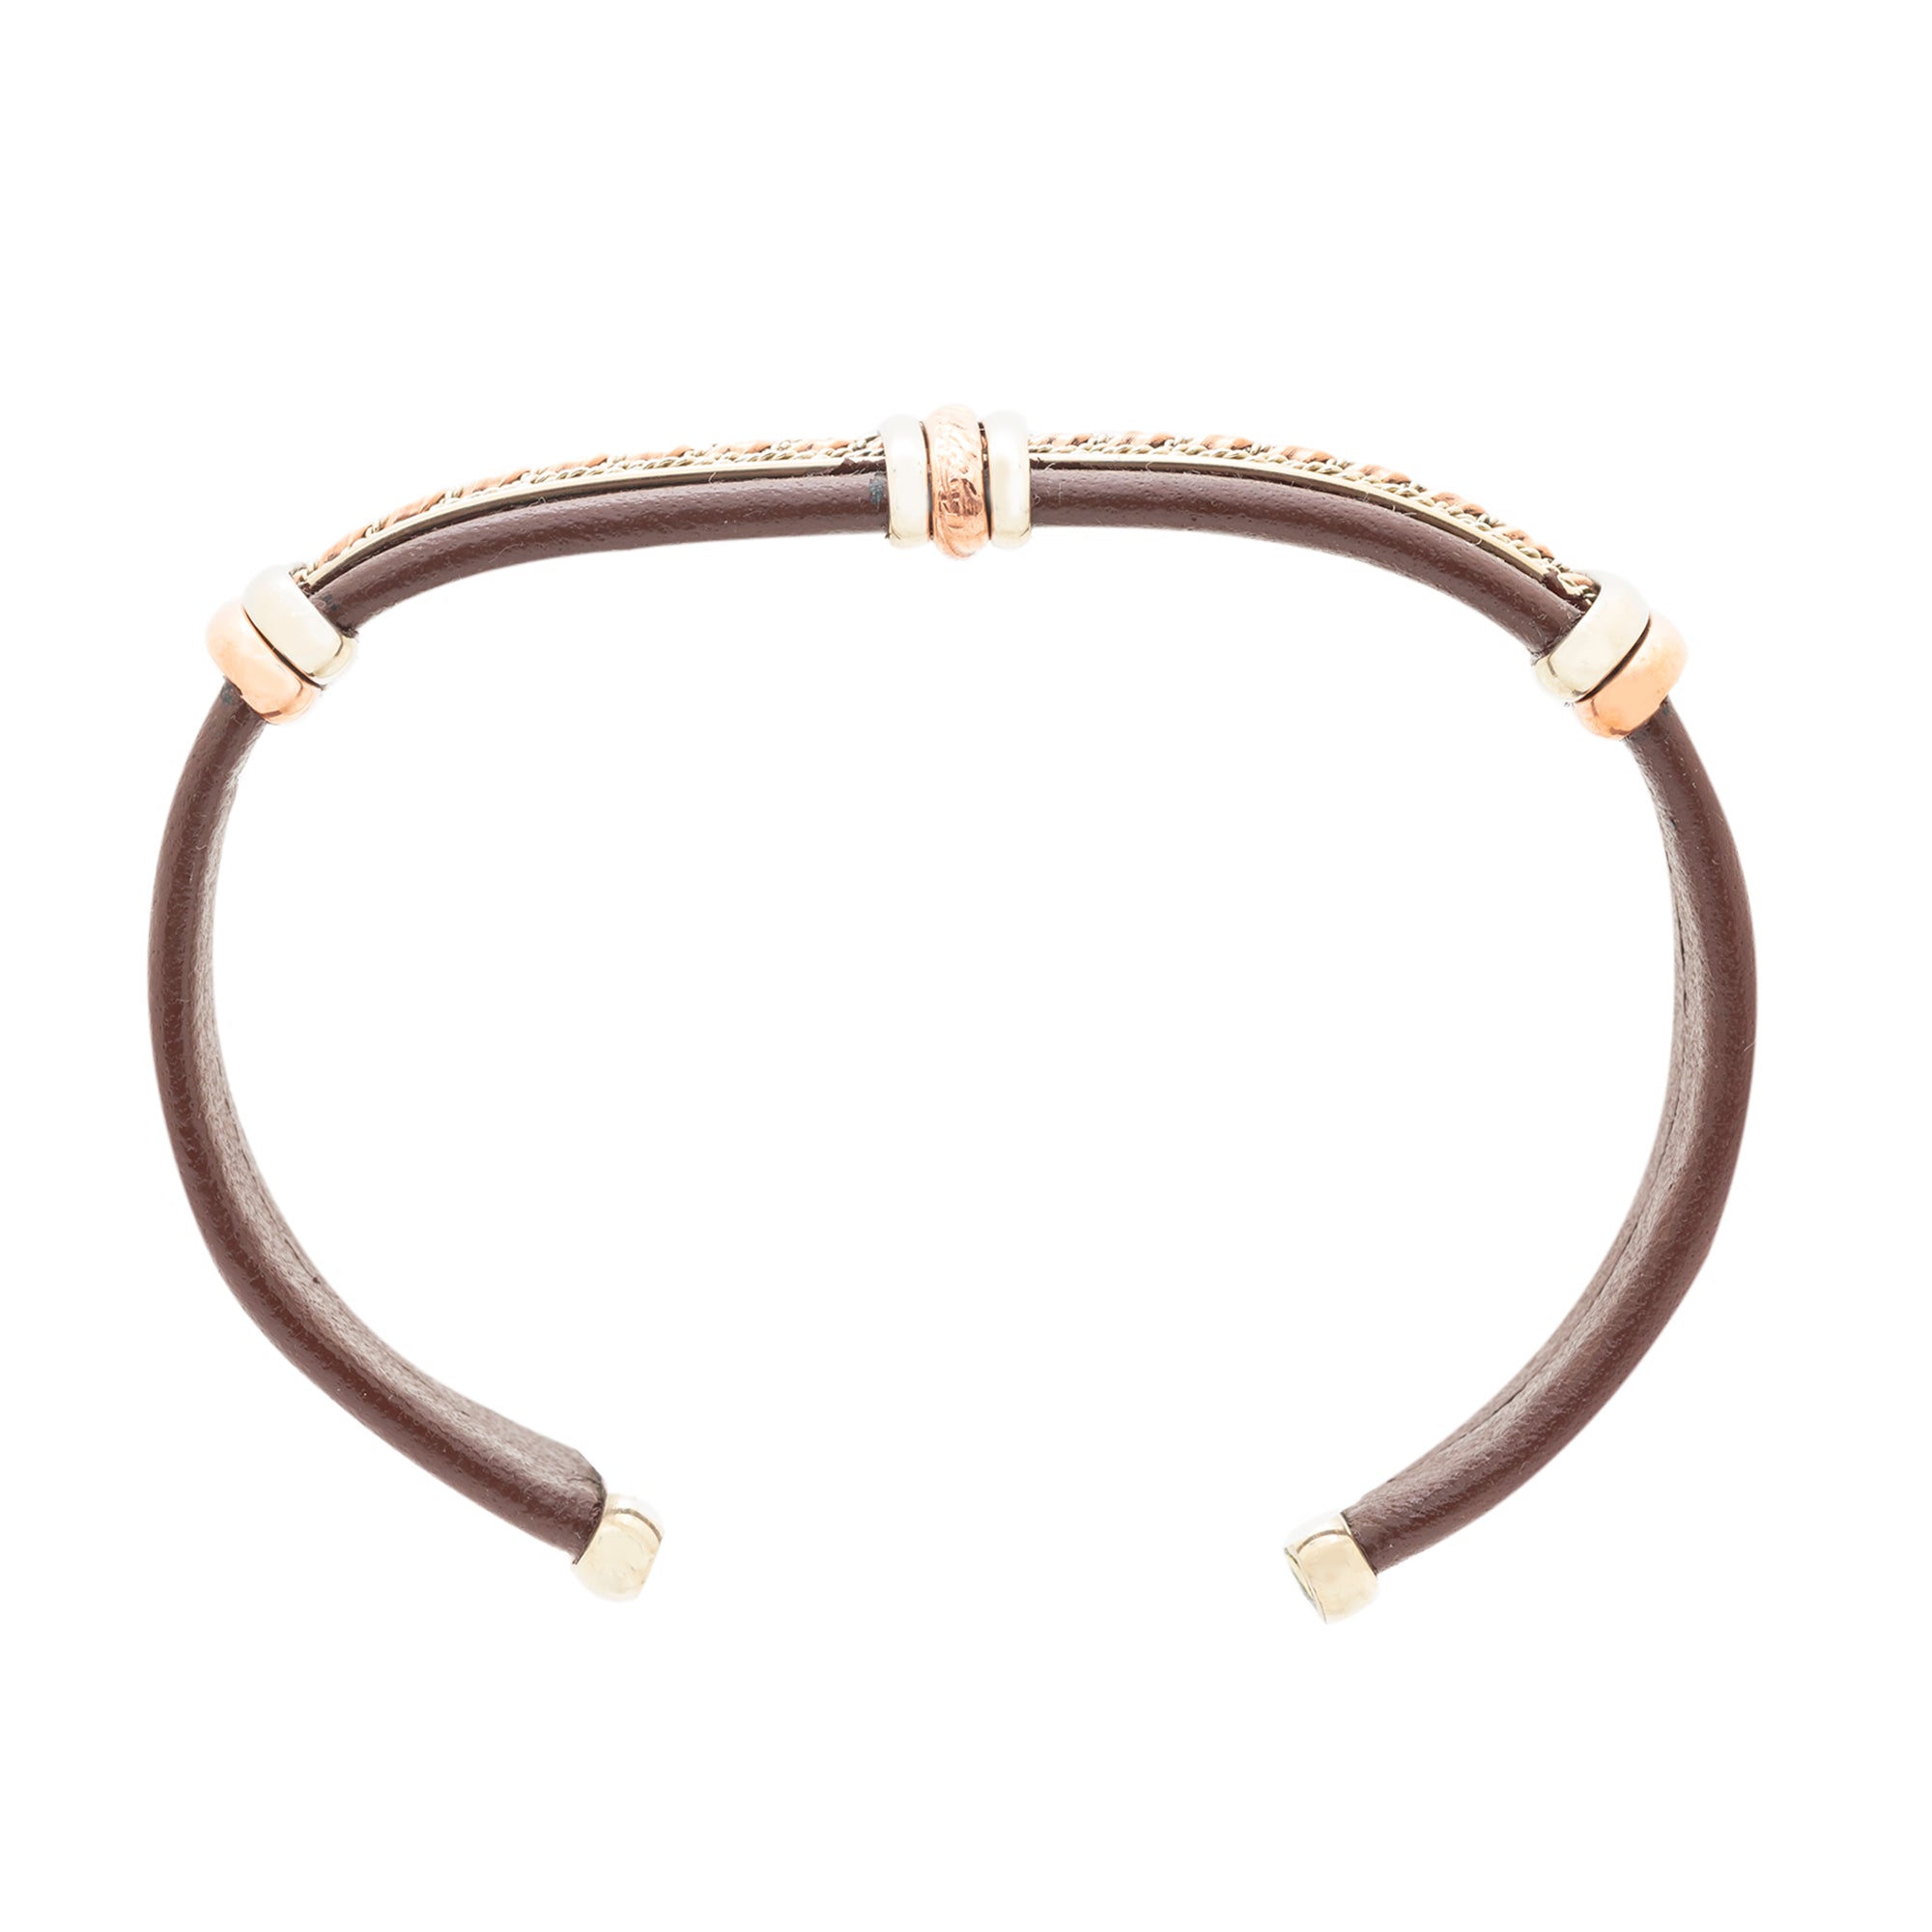 BR.ULB.0402 - Men's Leather Bracelet, Brown